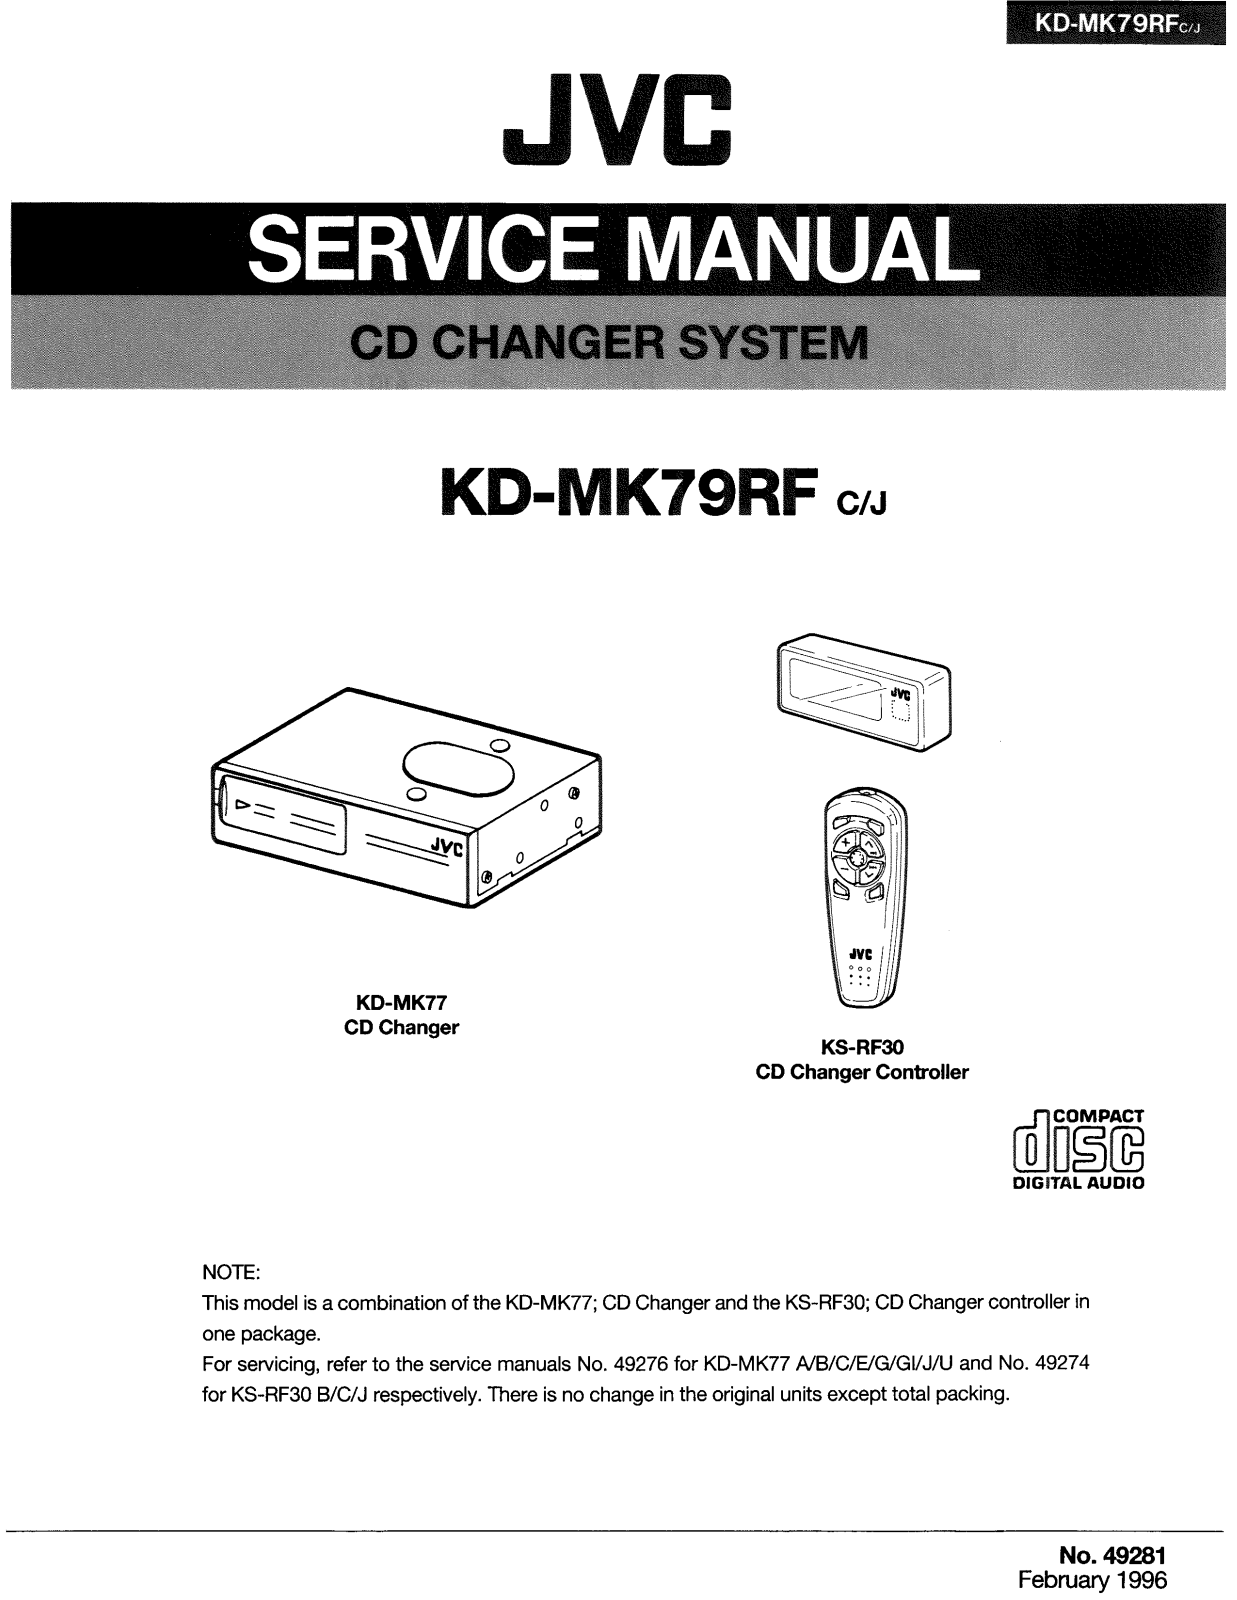 JVC KD-MK79RFC, KD-MK79RFJ Service Manual